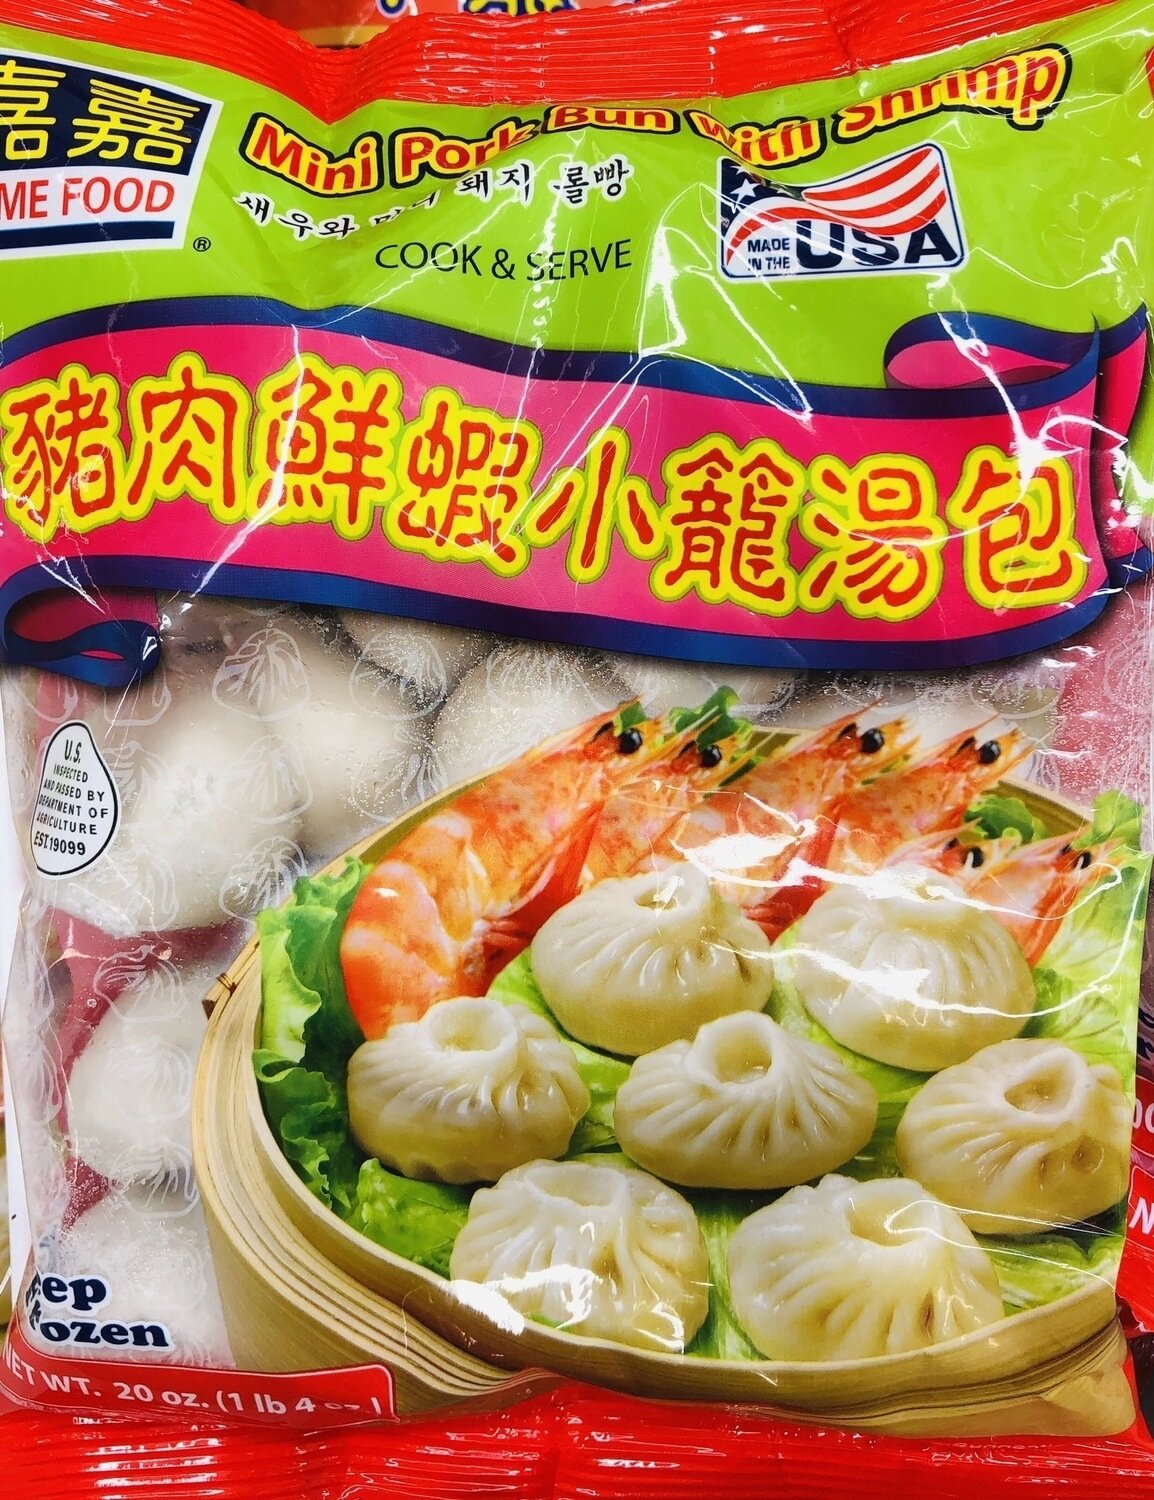 嘉嘉猪肉鲜虾小笼汤包 ​​PRIME FOOD Mini Pork Bun with Shrimp~20oz(1lb 4oz)​​